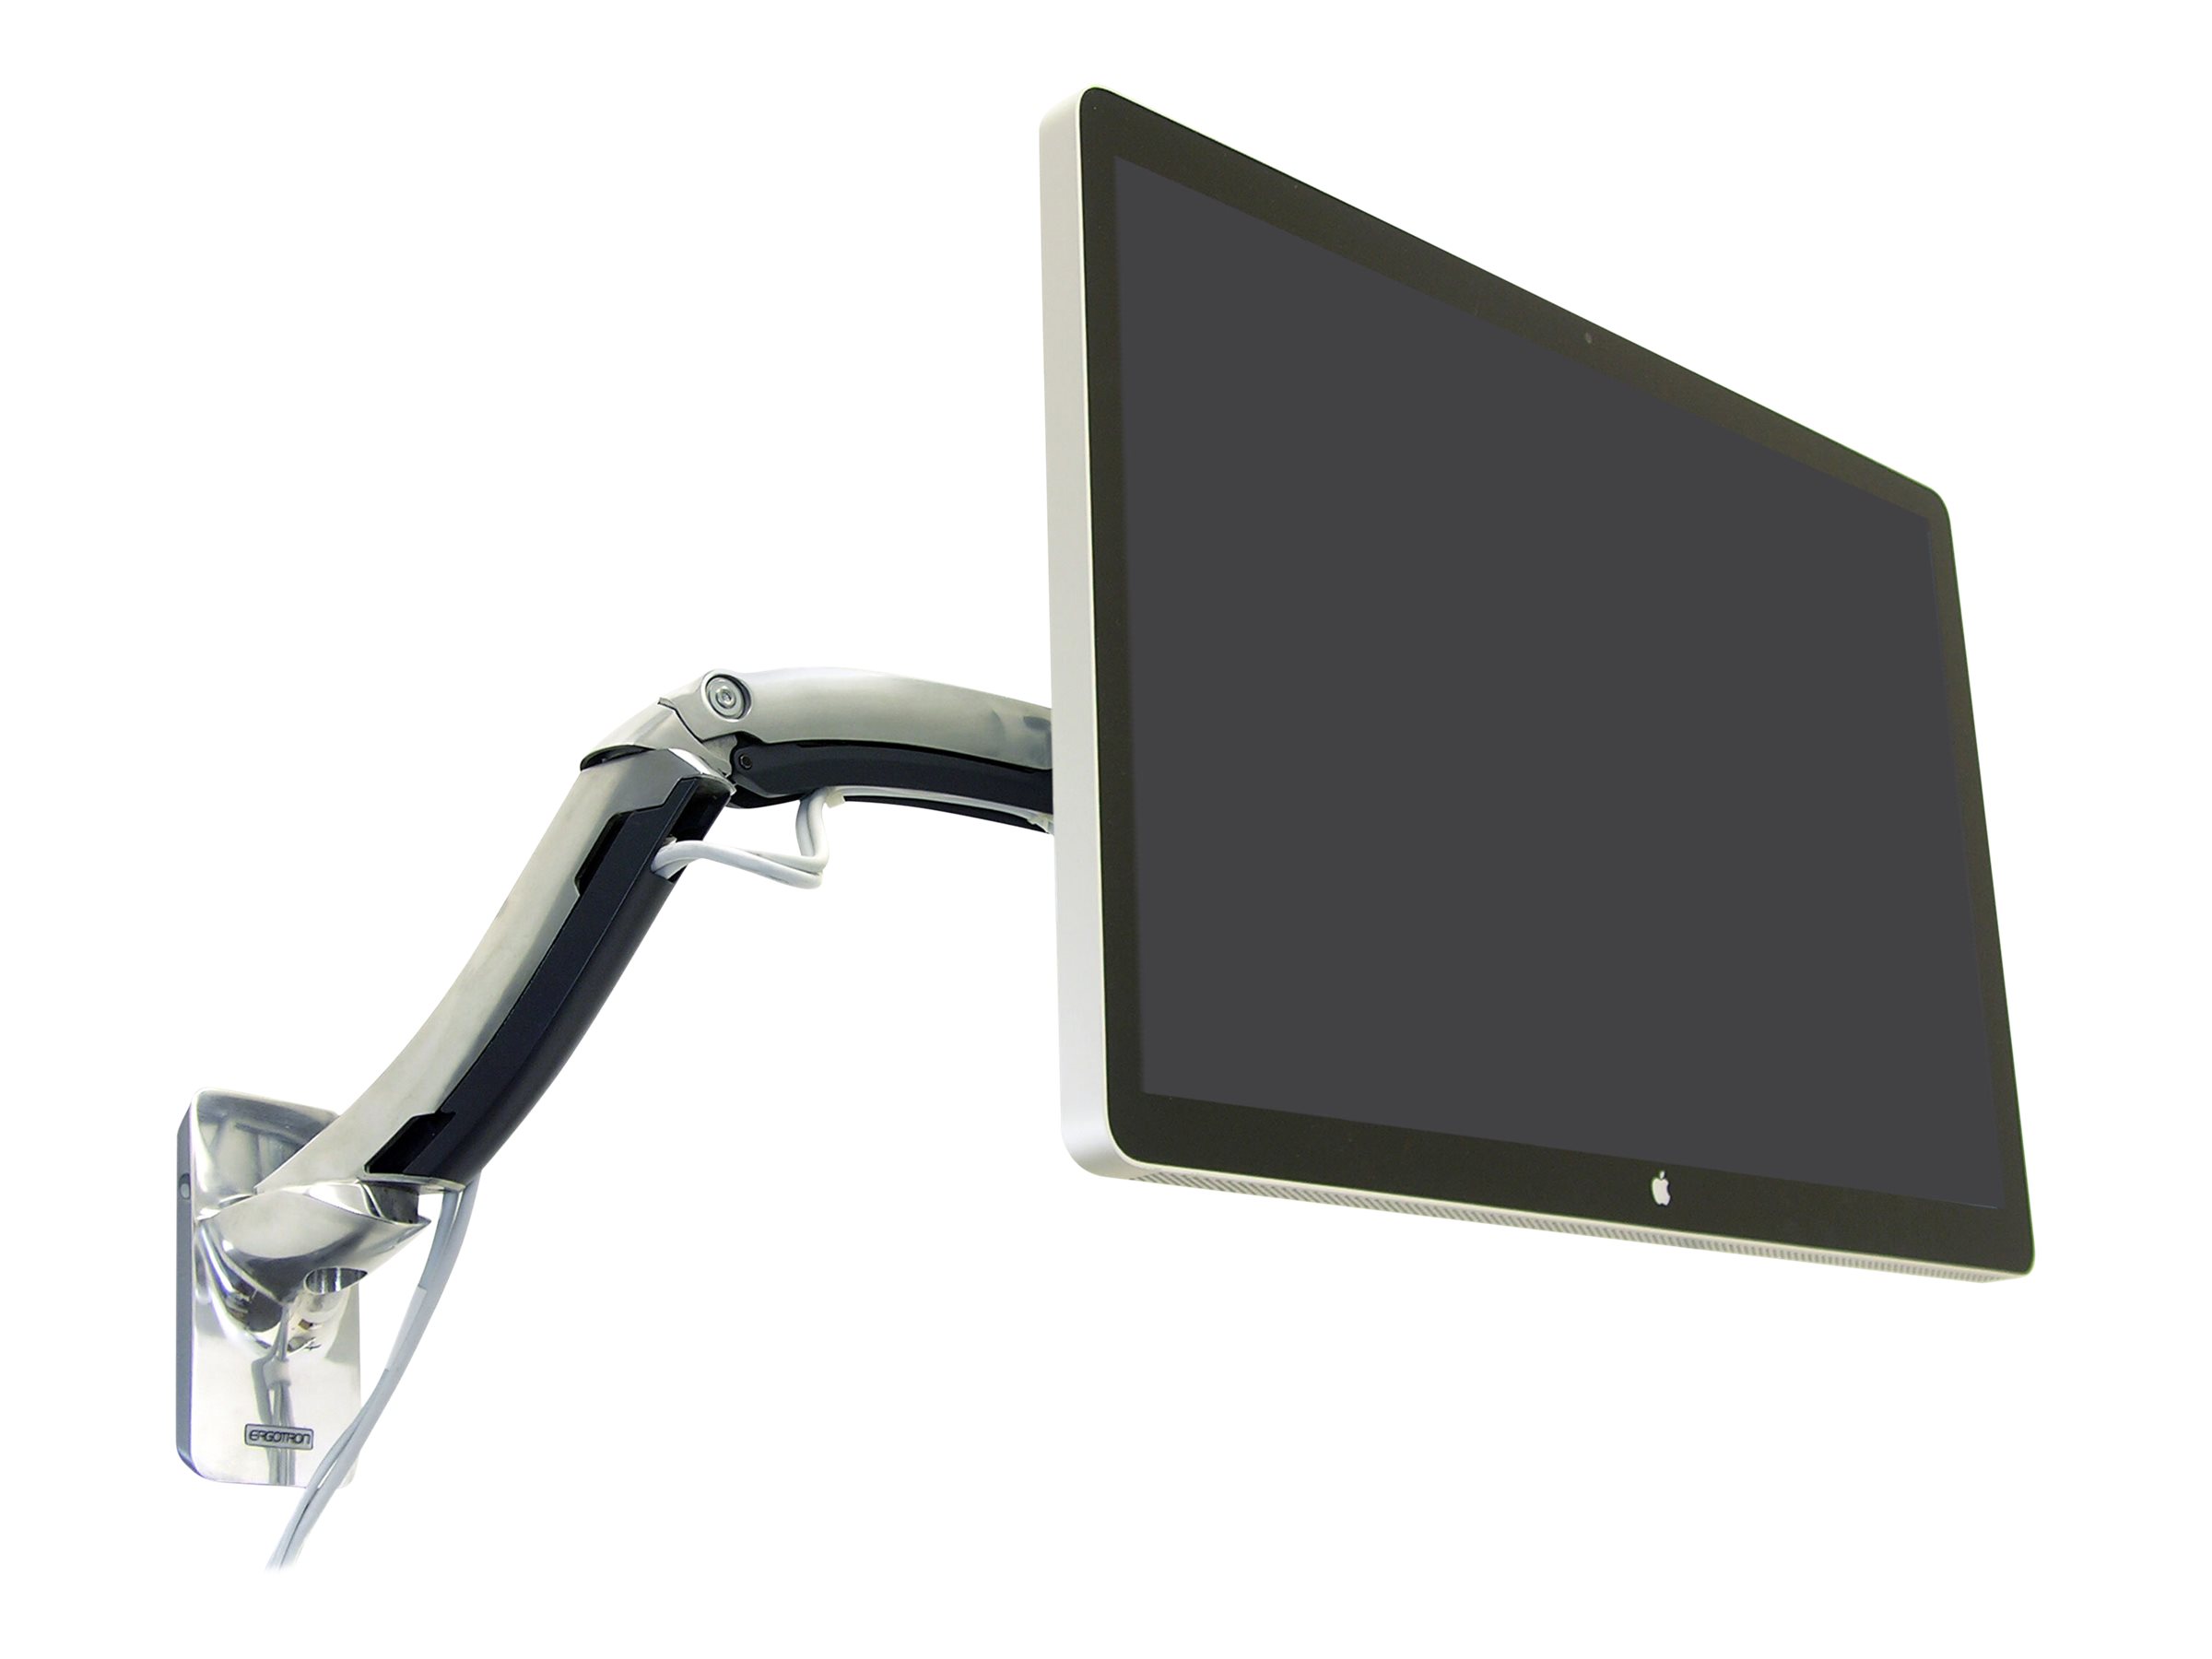 ERGOTRON MX LCD Arm fuer Wandmontage bis 106,7cm 42Zoll Display 6,3-13,6kg. VESA 75x75 100x100 200x100 200x200